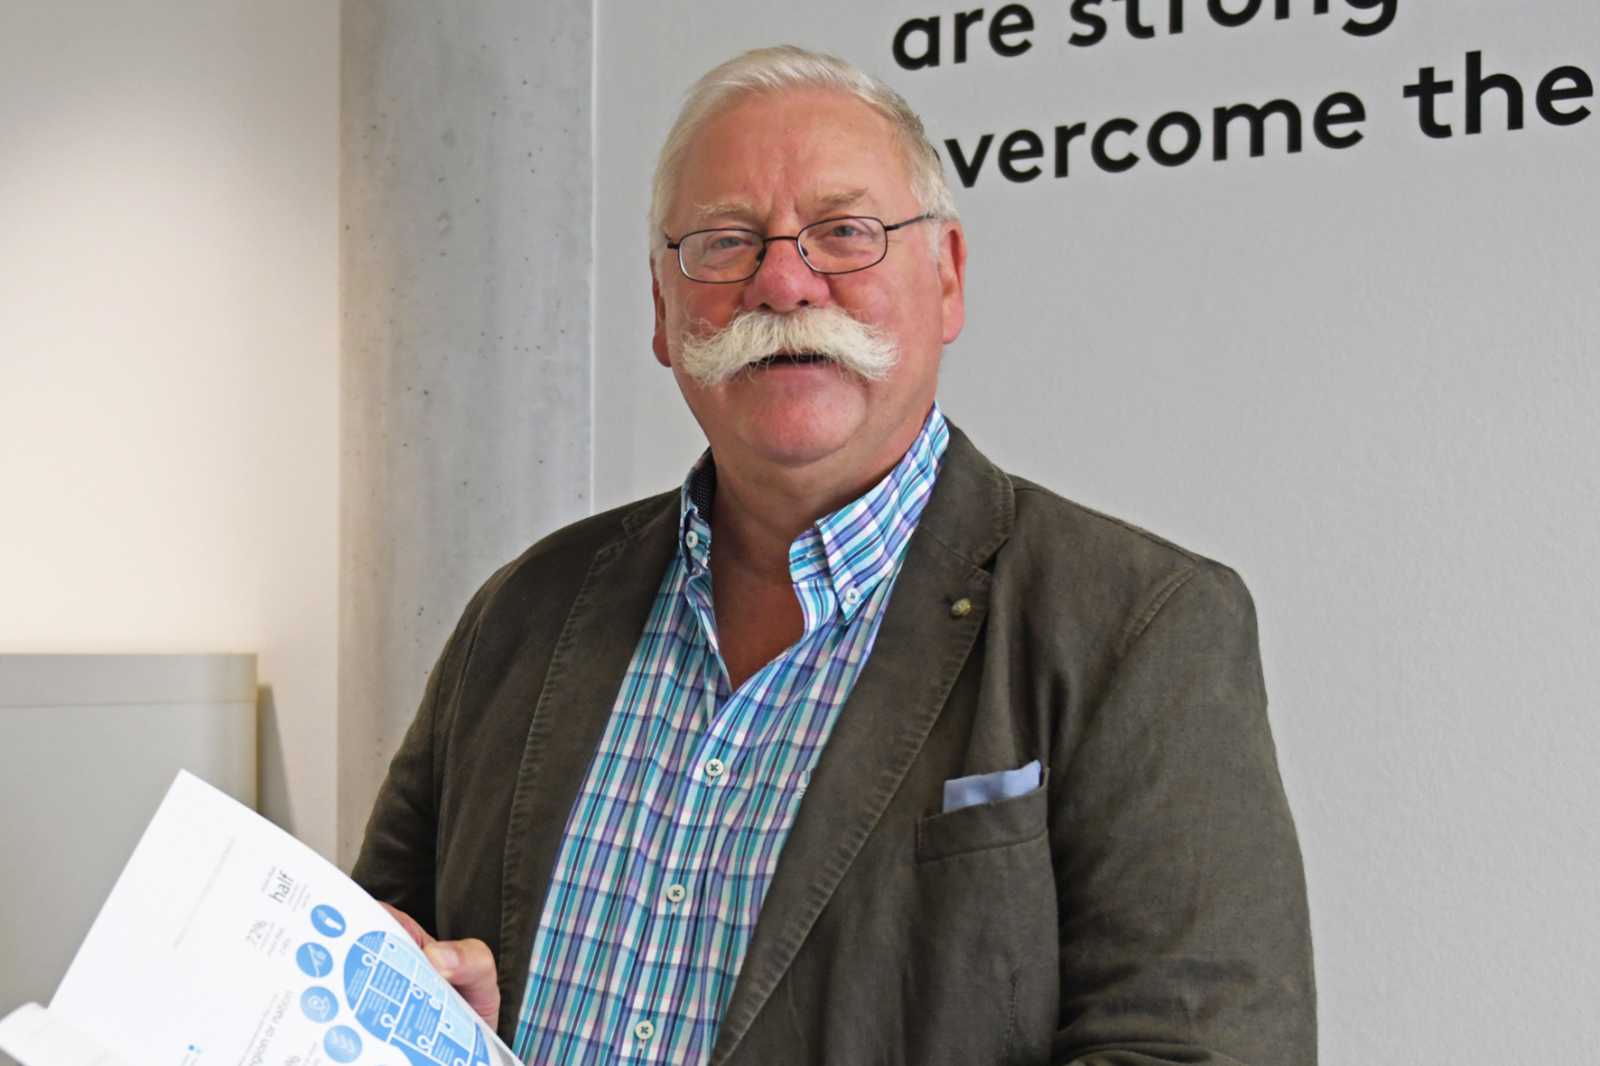 Prof. Dr. Thomas Baaken, Leiter des Science-to-Business Marketing Research Centre der FH Münster, freut sich über die Anerkennung seiner Arbeit durch das BMBF. (Foto: FH Münster/S2BMRC)